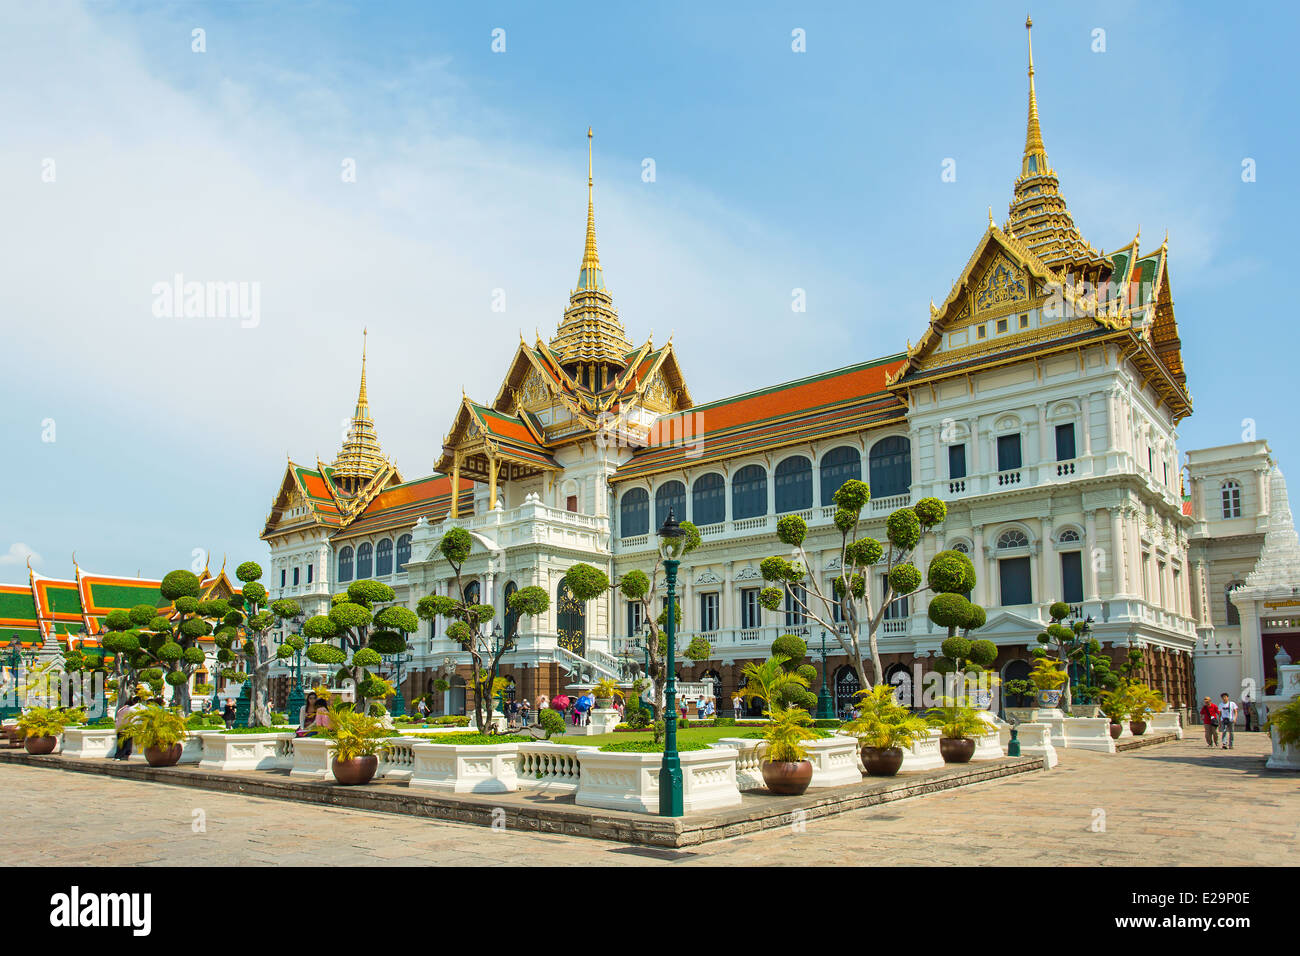 Площадь бангкока. Королевский дворец в Бангкоке. Большой дворец (the Grand Palace)Бангкок. Бангкок дворец короля. Гранд Палас Бангкок.